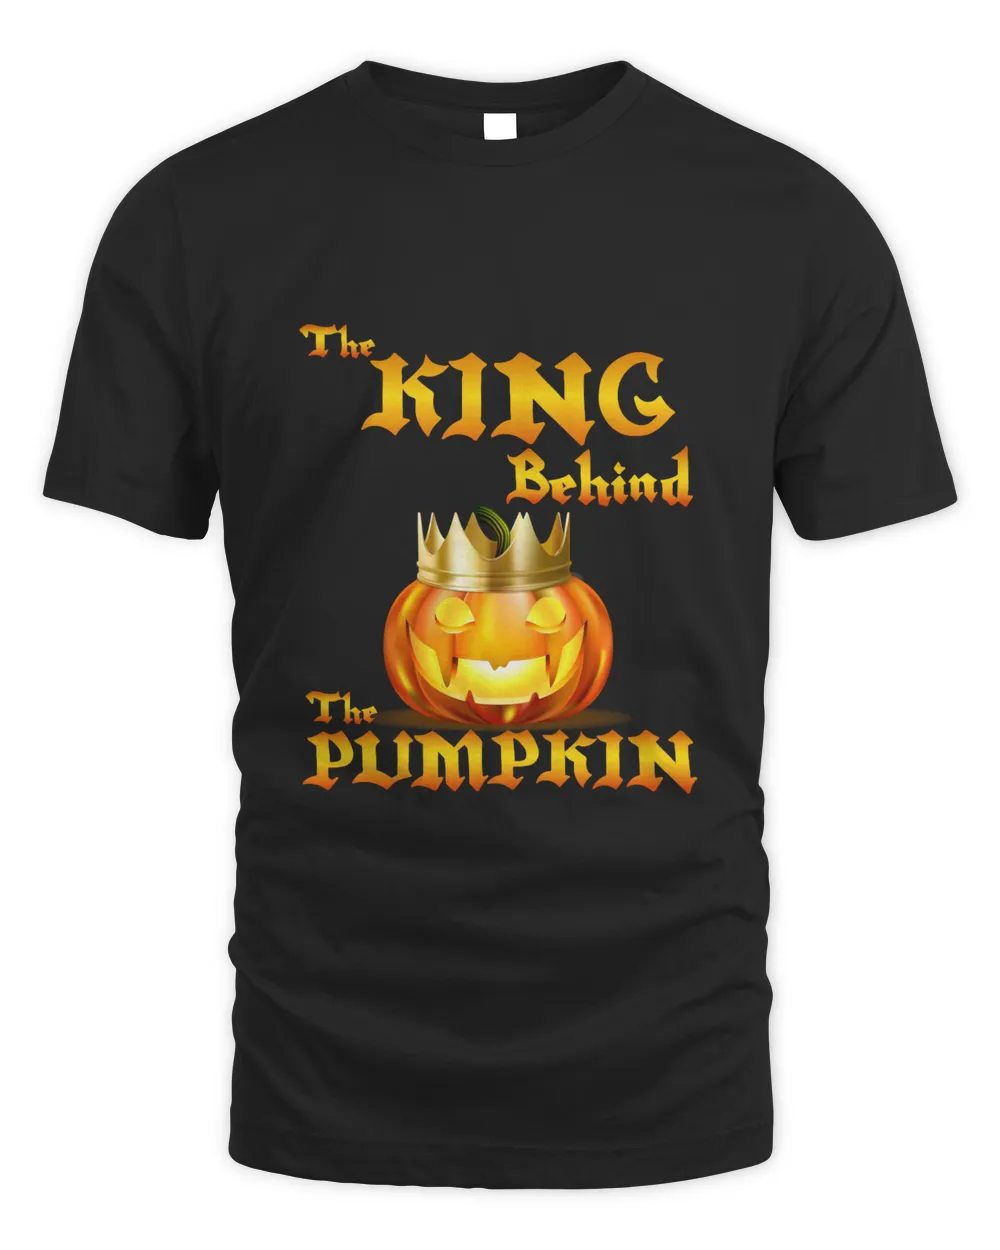 MEMOD70 - Halloween Shirt The King Behind The Pumpkin